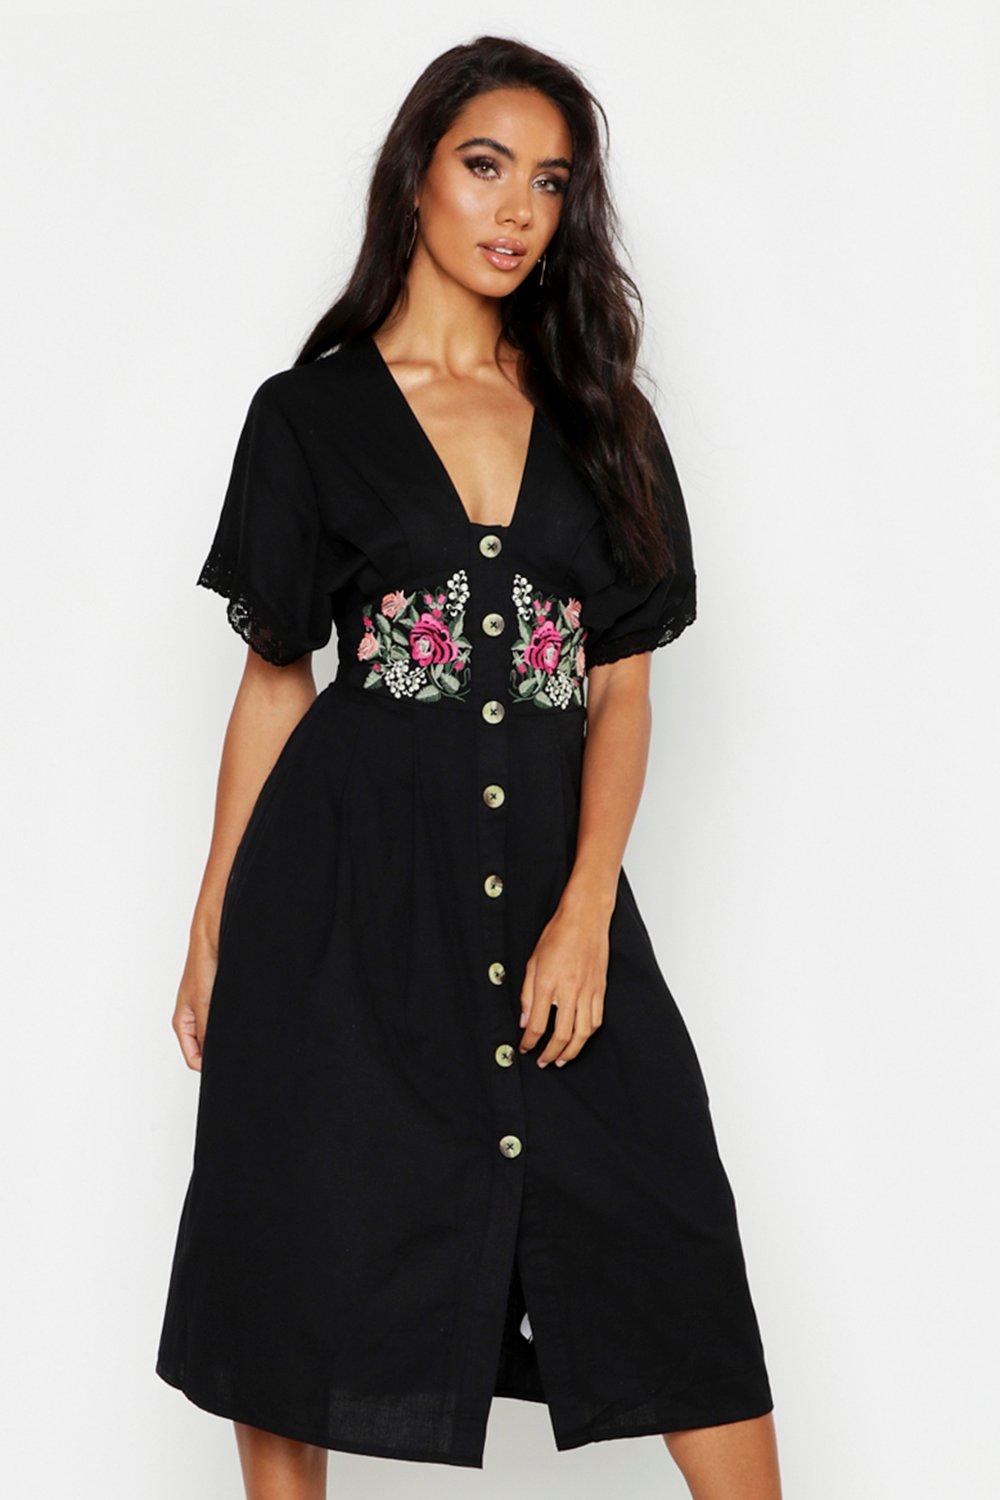 designer saree with designer blouse